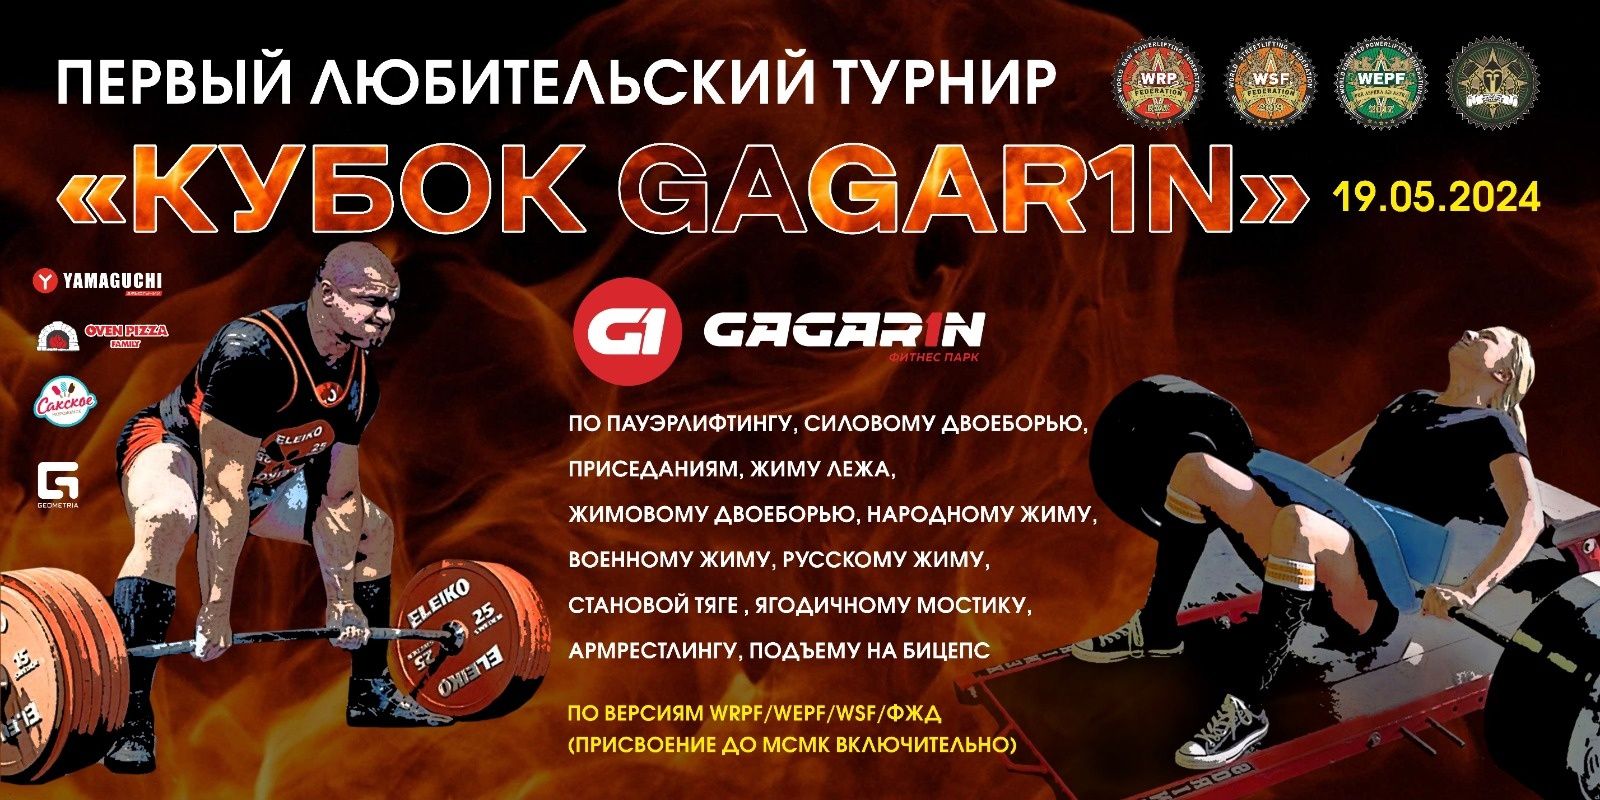 Турнир фитнес-парка Gagarin «Аматор» WRPF/WEPF/WSF/СПР/ФЖД, Симферополь, 19.05.2024